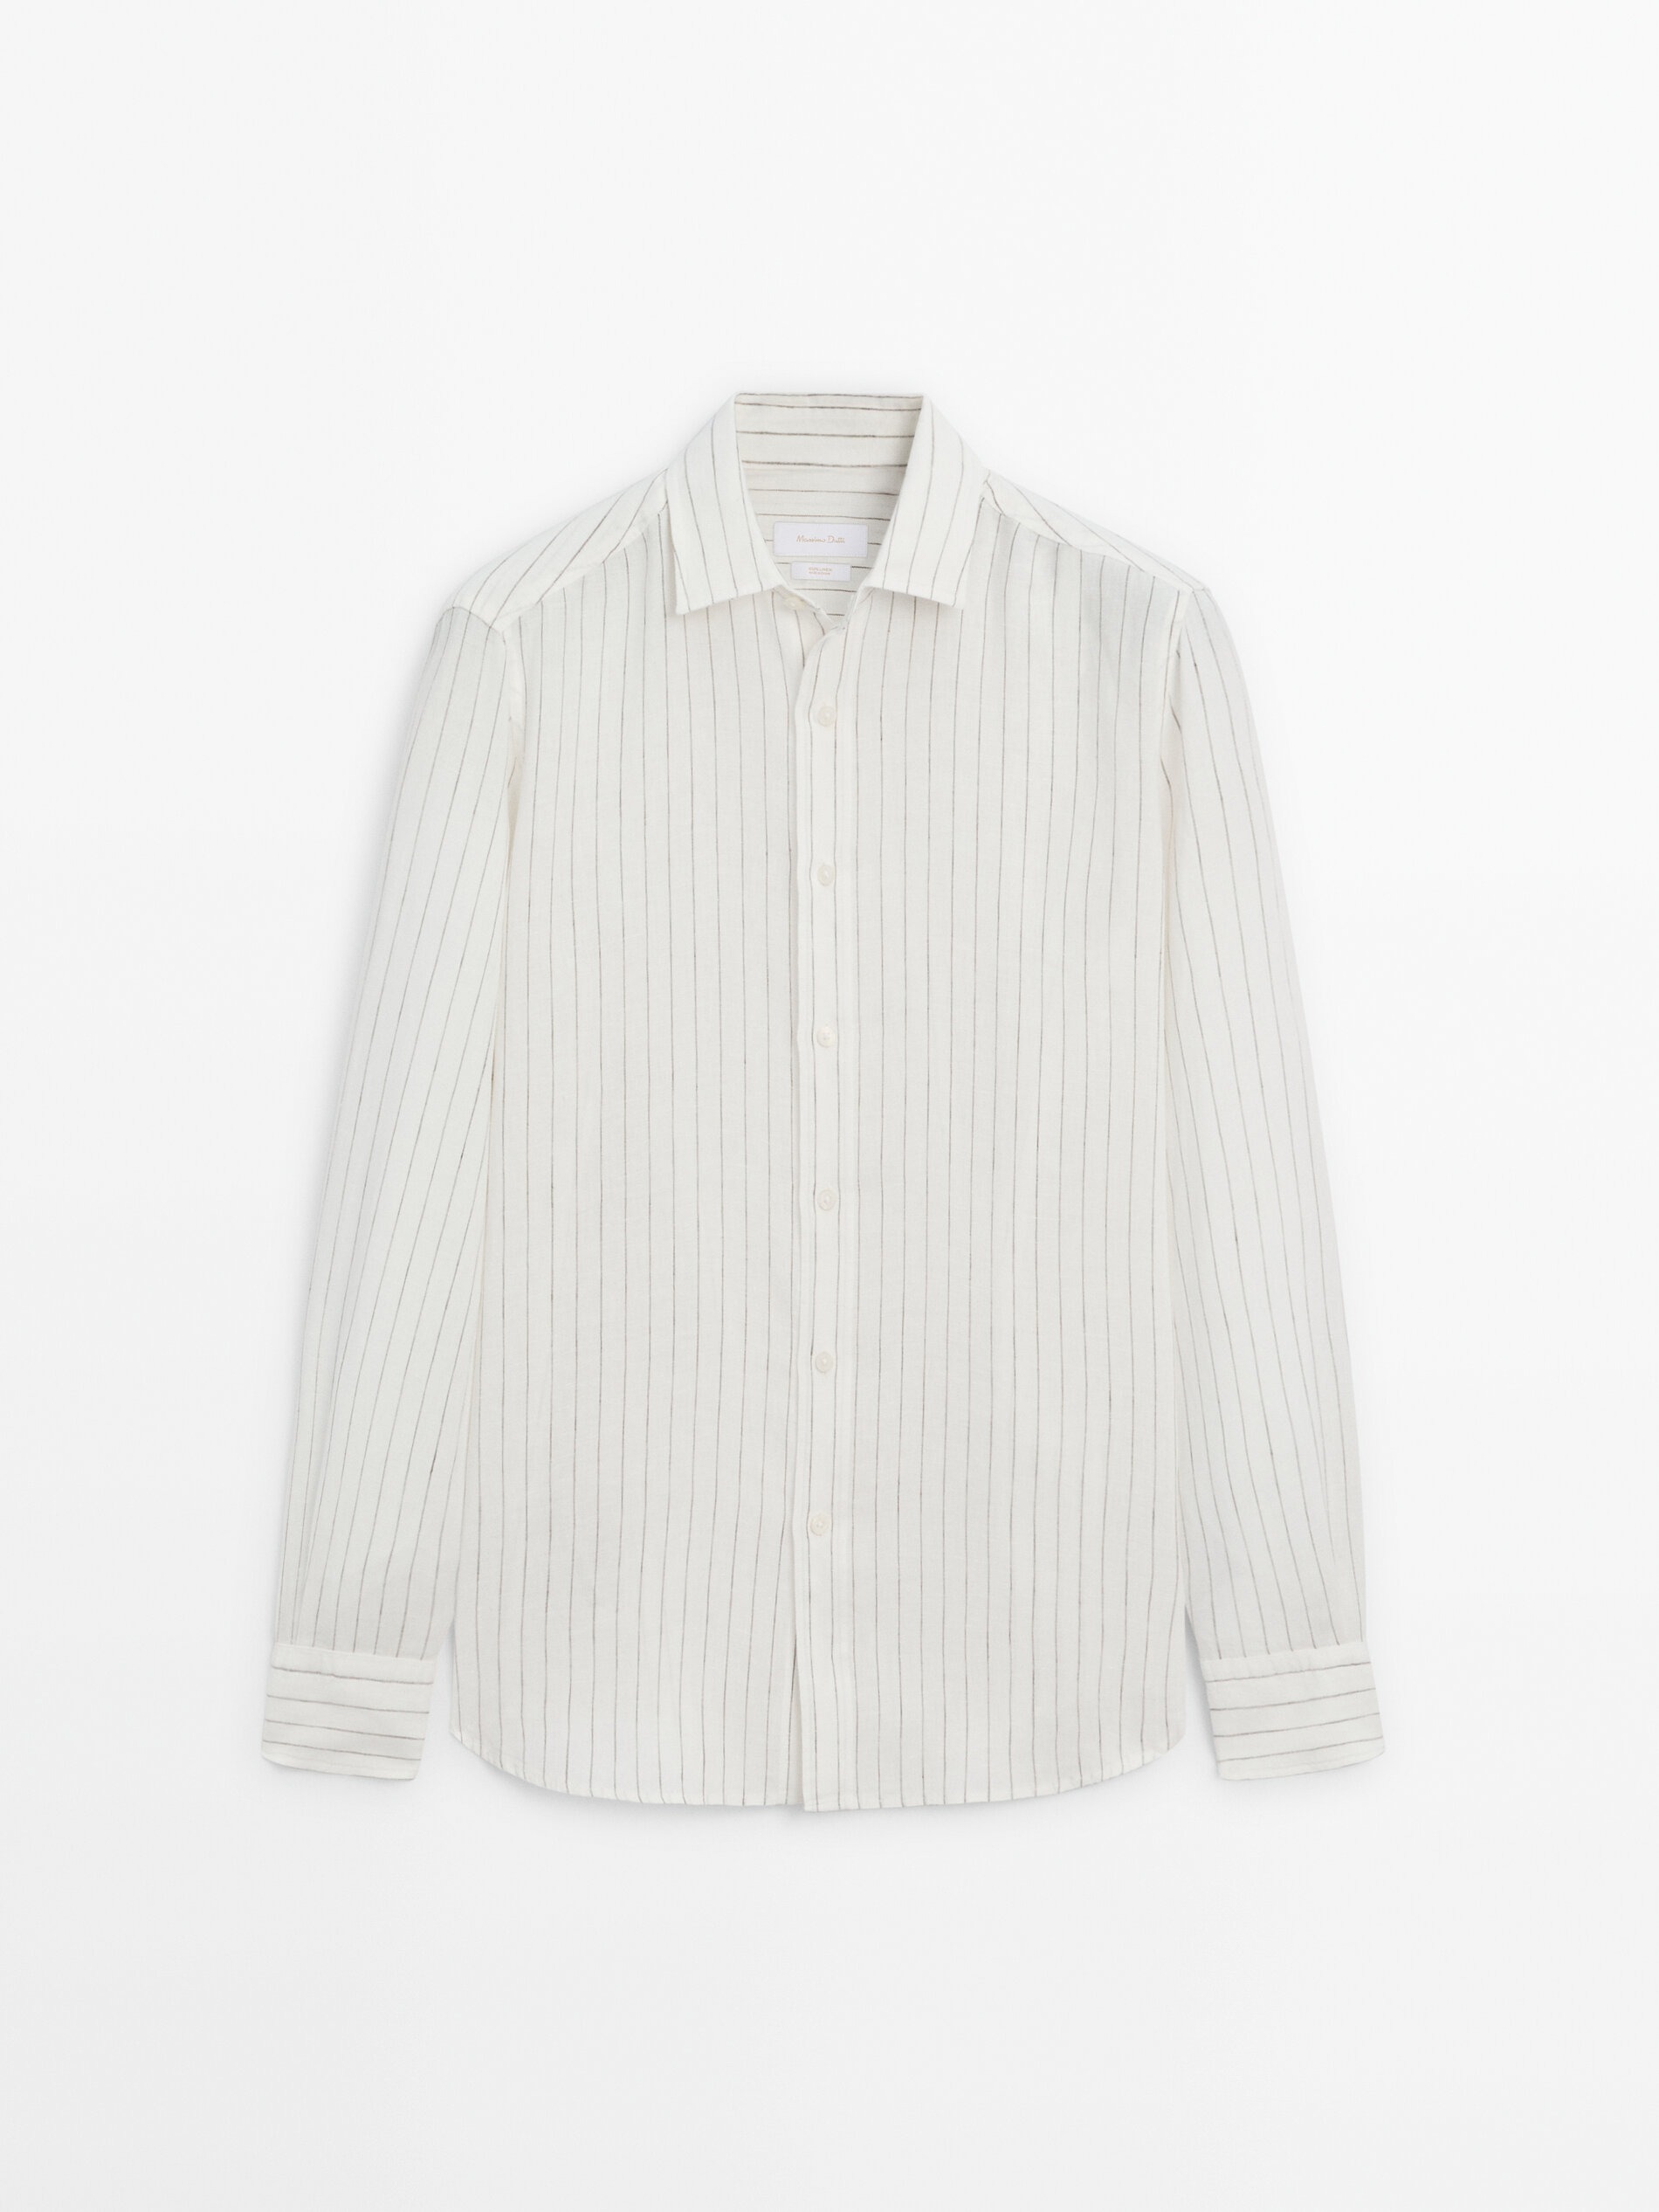 Рубашка Massimo Dutti Regular-Fit Striped 100% Linen, белый рубашка uniqlo 100% linen striped белый синий